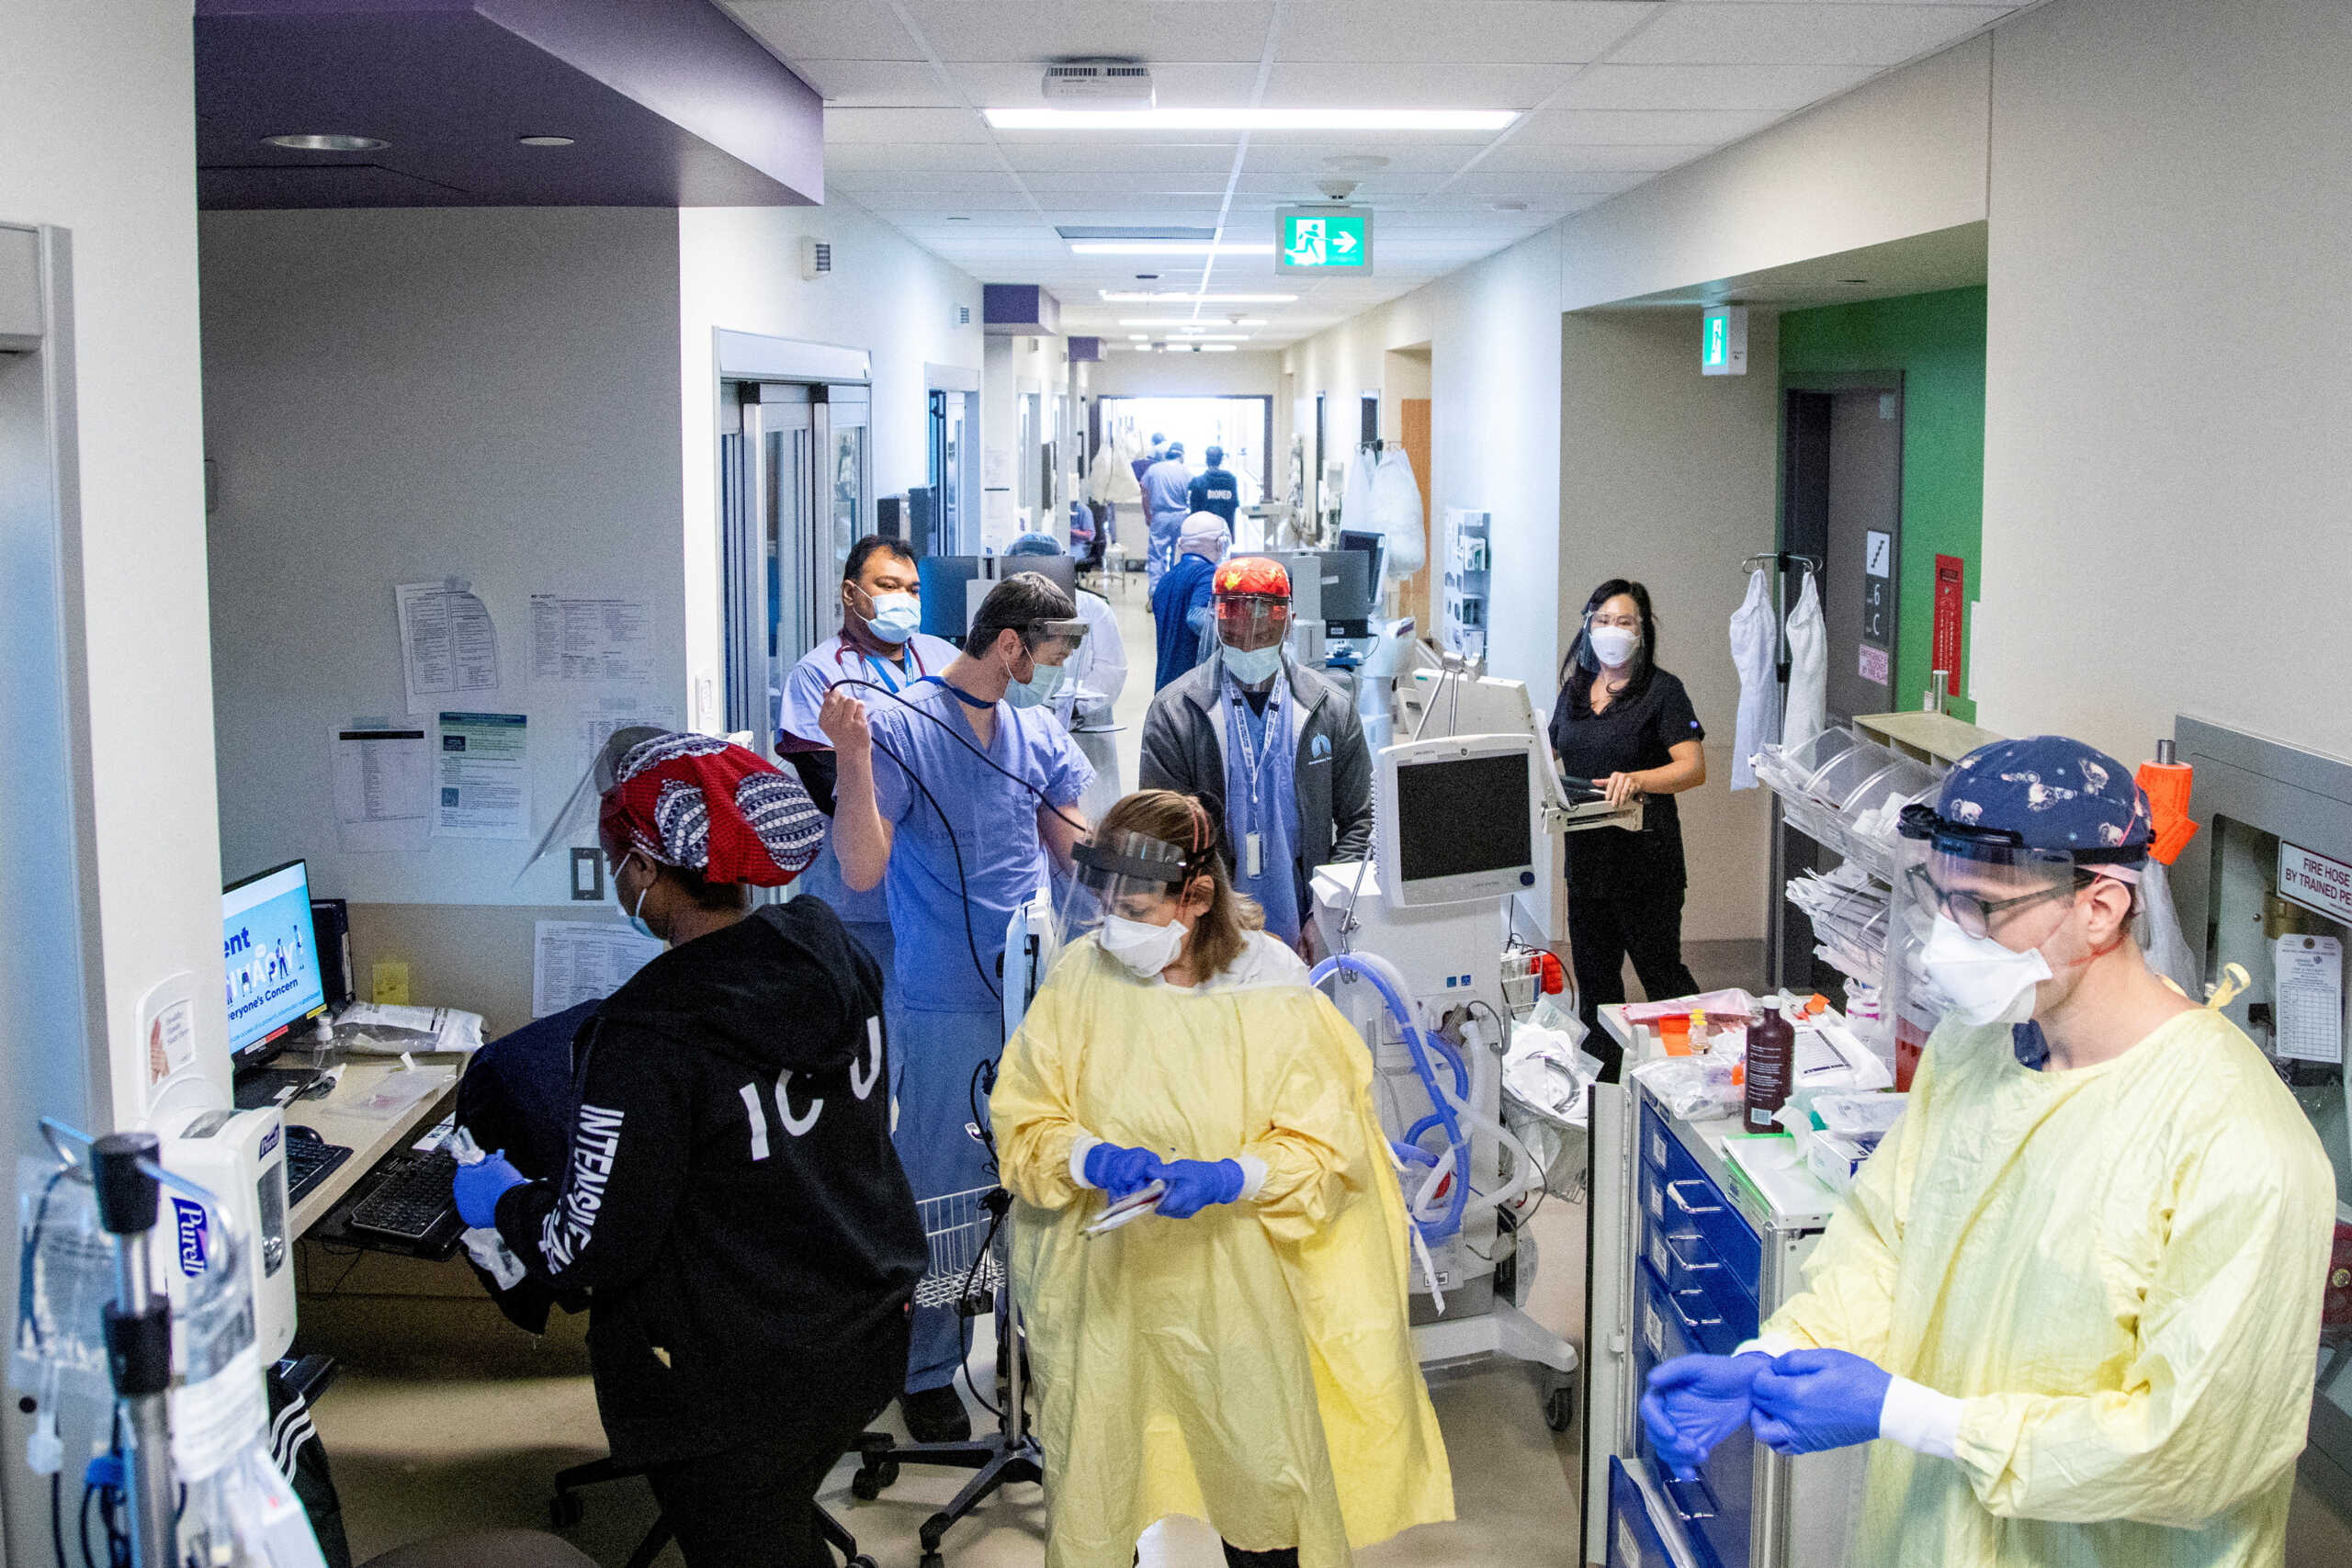 Νοσοκομεία: Εισάγονται βραχιολάκια ταυτοποίησης ασθενών – Νέα εγκύκλιος από τη Μίνα Γκάγκα